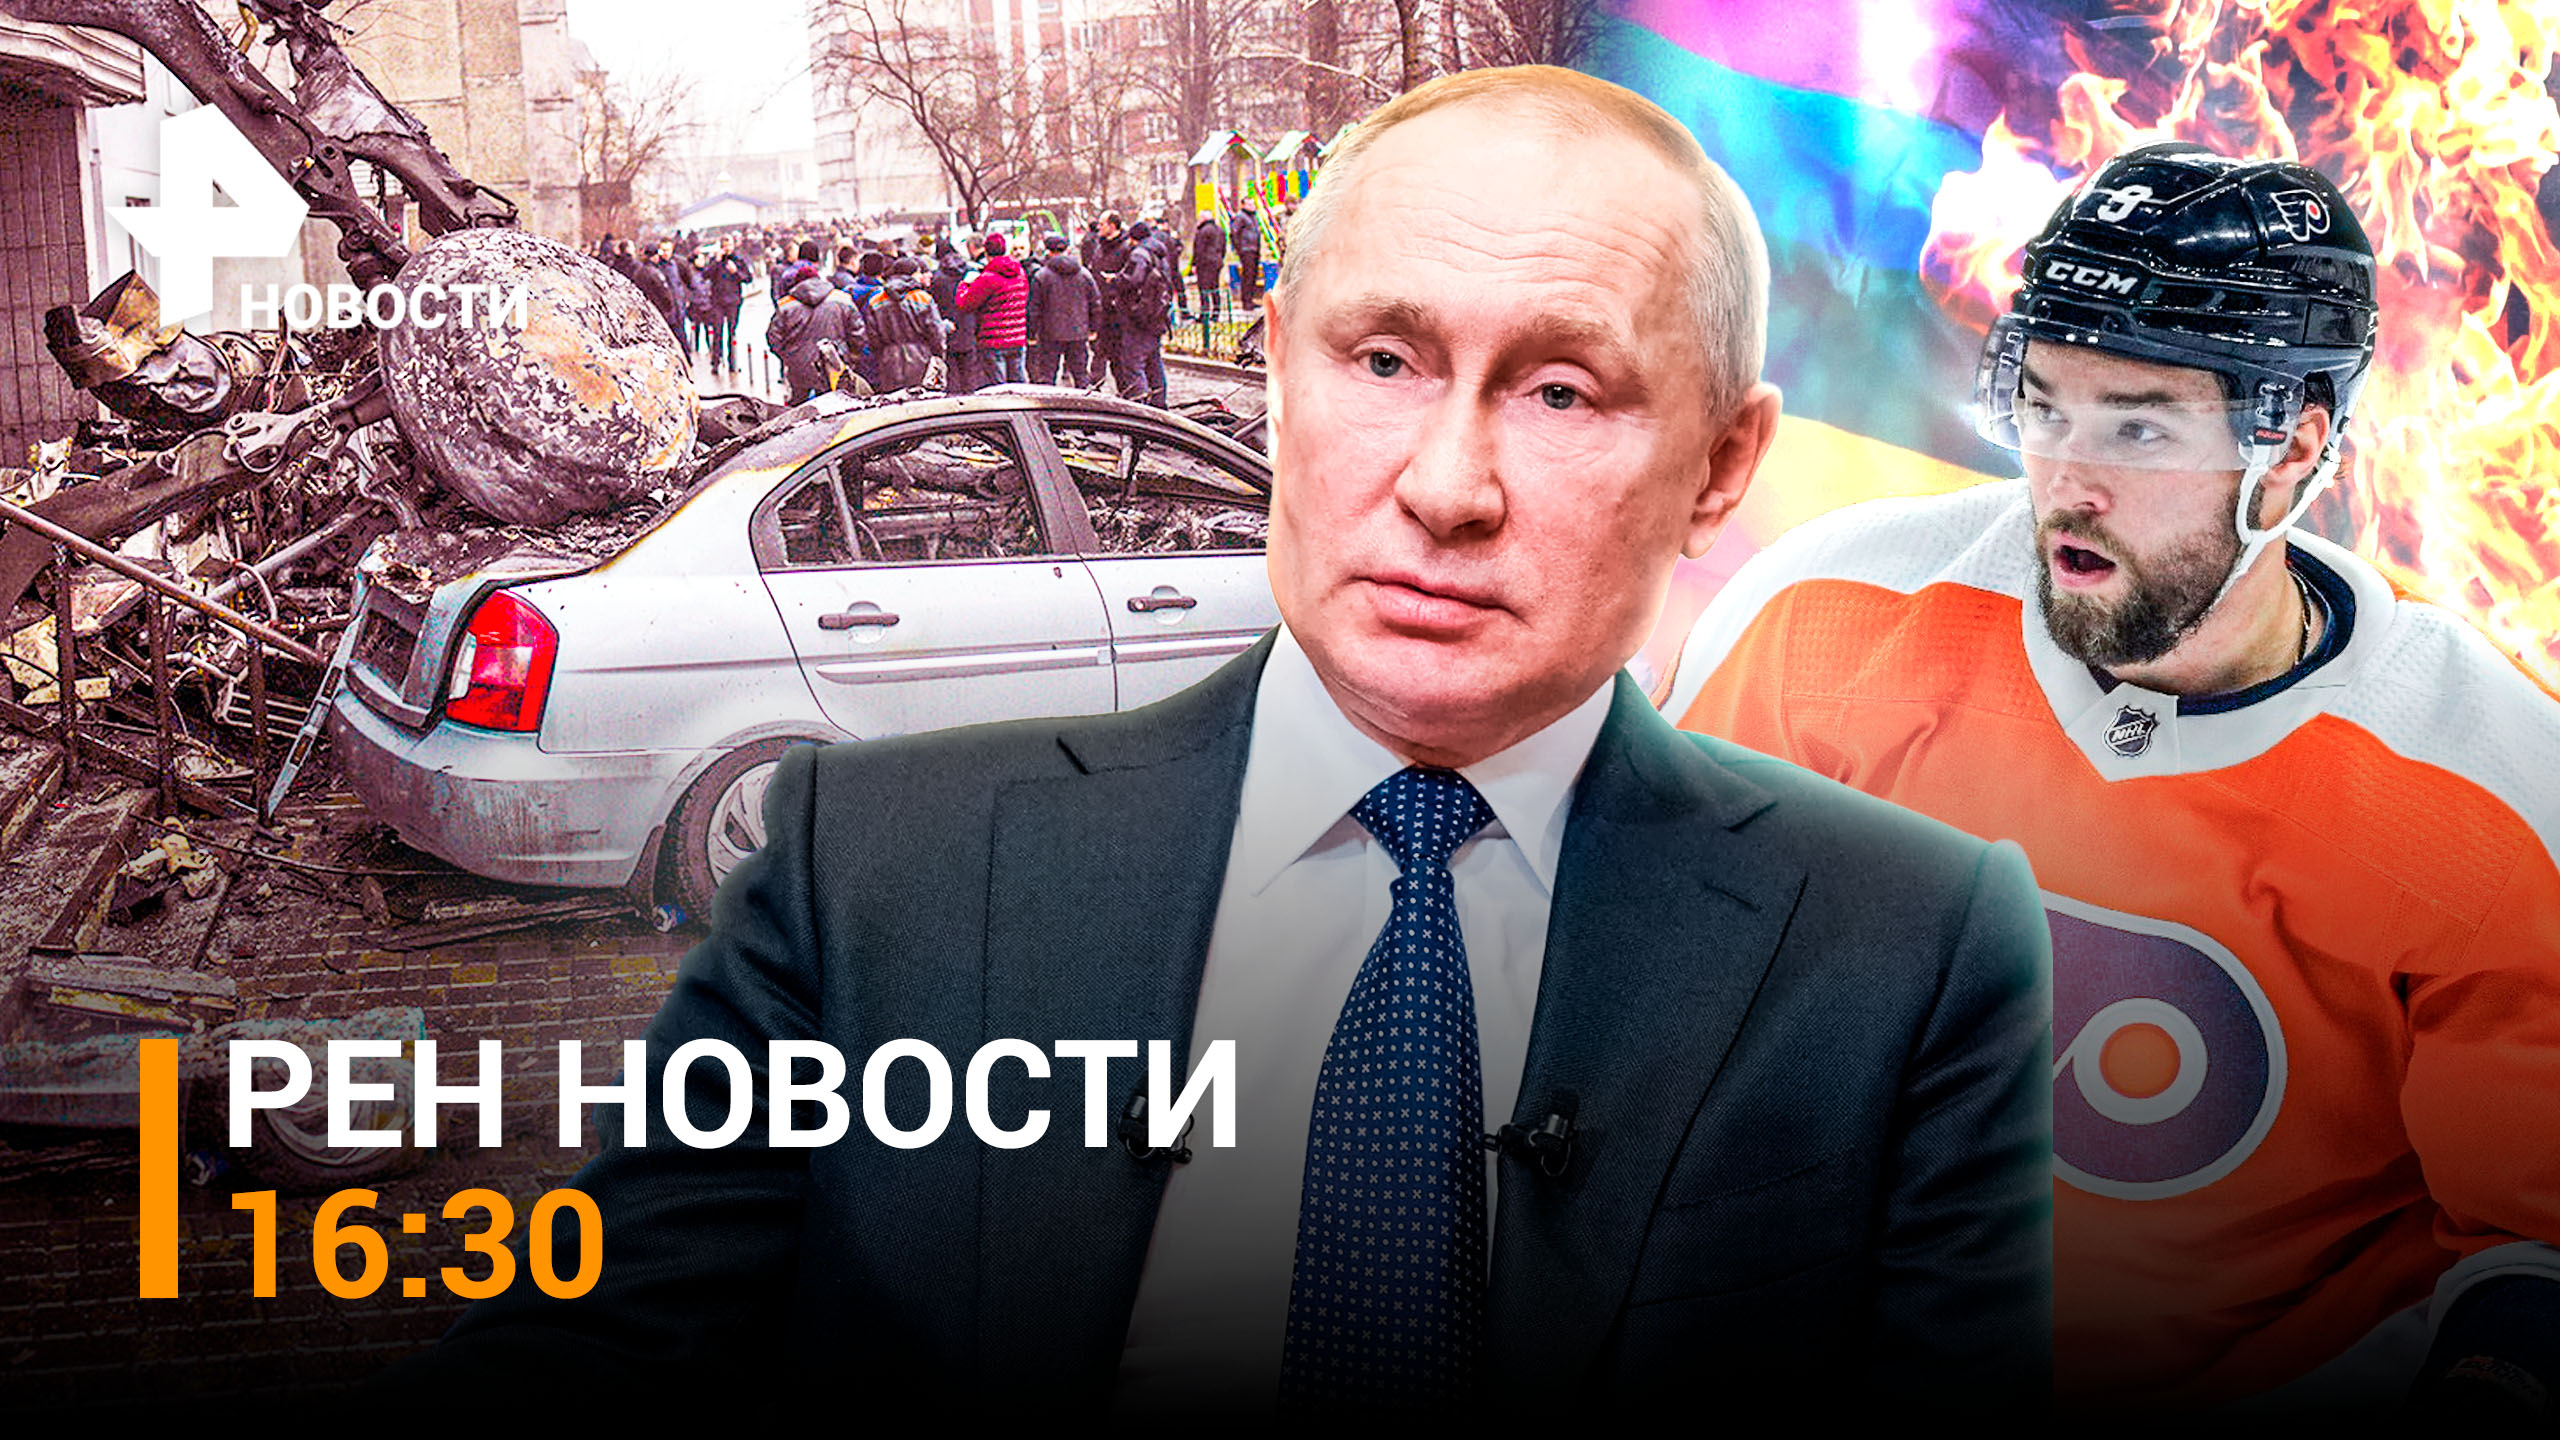 Путин – победа неизбежна. Российский хоккеист в НХЛ не поддержал ЛГБТ / РЕН НОВОСТИ 18.01,16:30